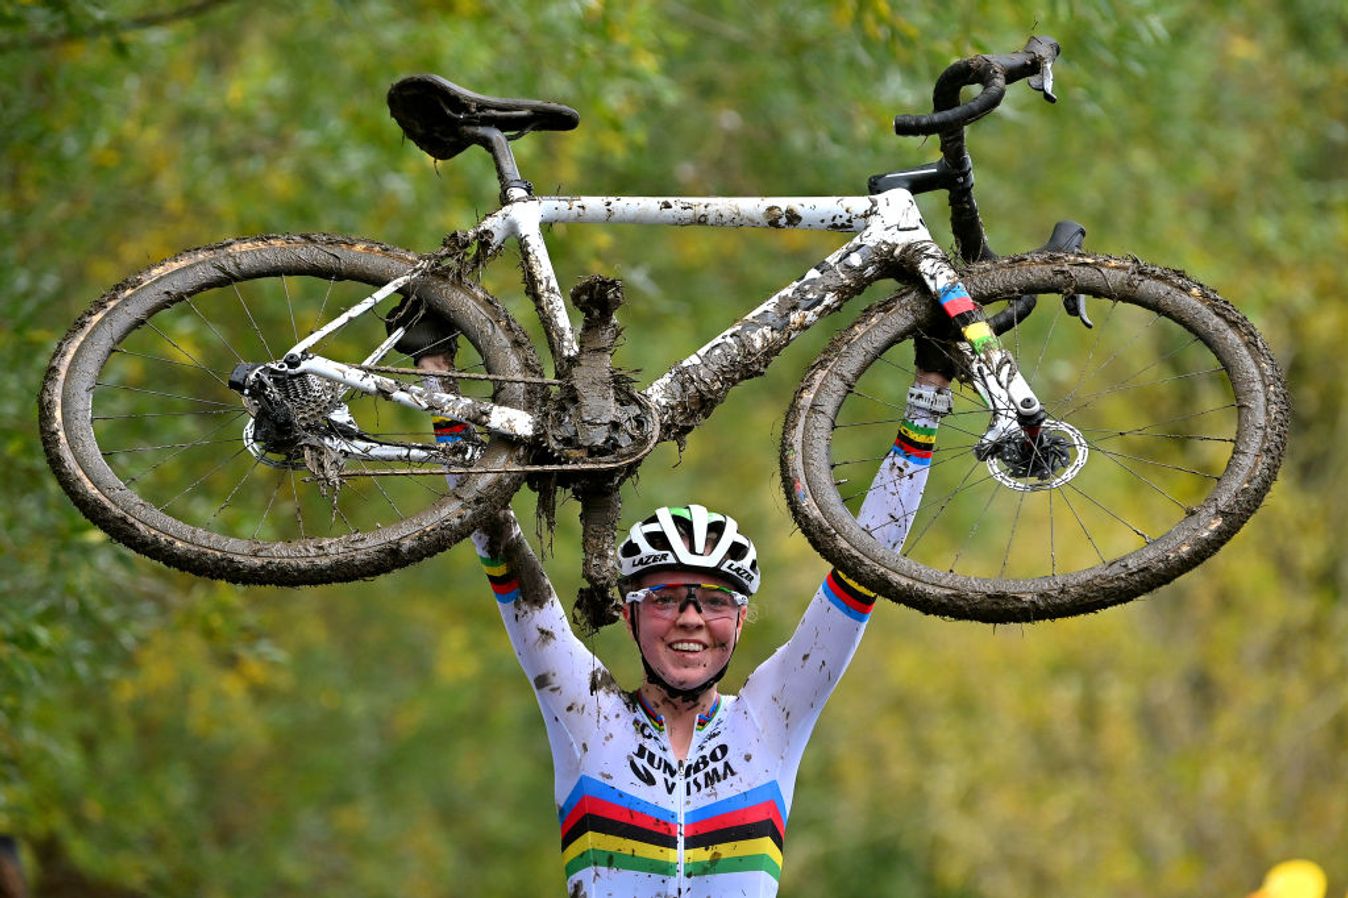 Fem van Empel has been unstoppable in cyclo-cross